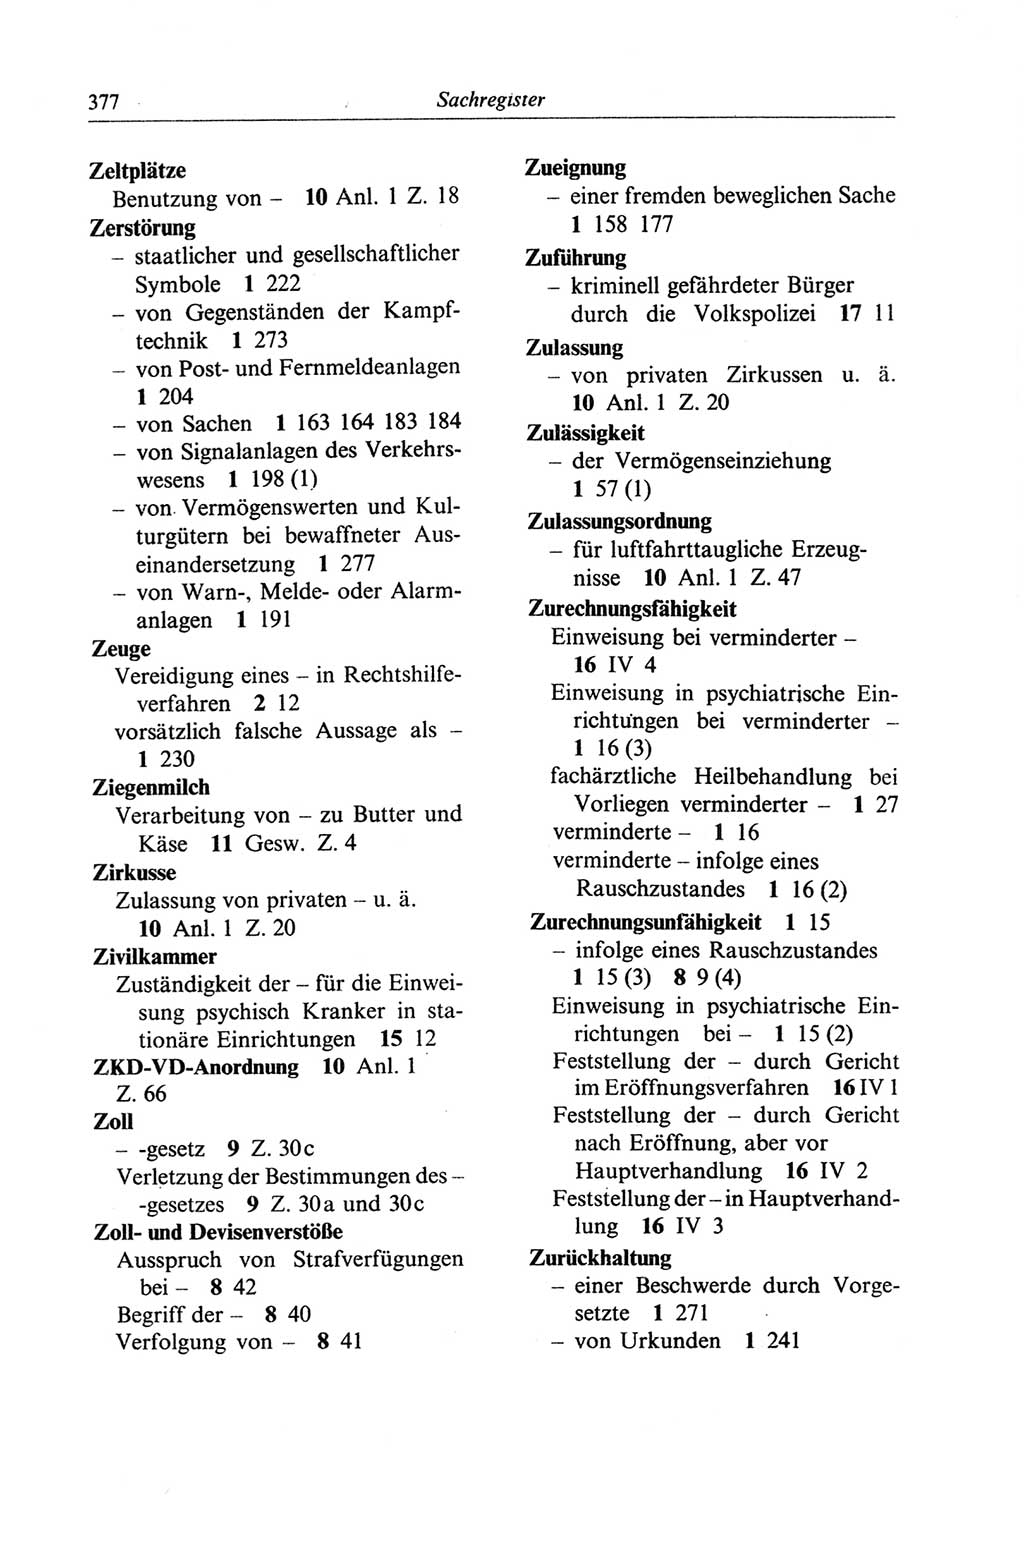 Strafgesetzbuch (StGB) der Deutschen Demokratischen Republik (DDR) und angrenzende Gesetze und Bestimmungen 1968, Seite 377 (StGB Ges. Best. DDR 1968, S. 377)